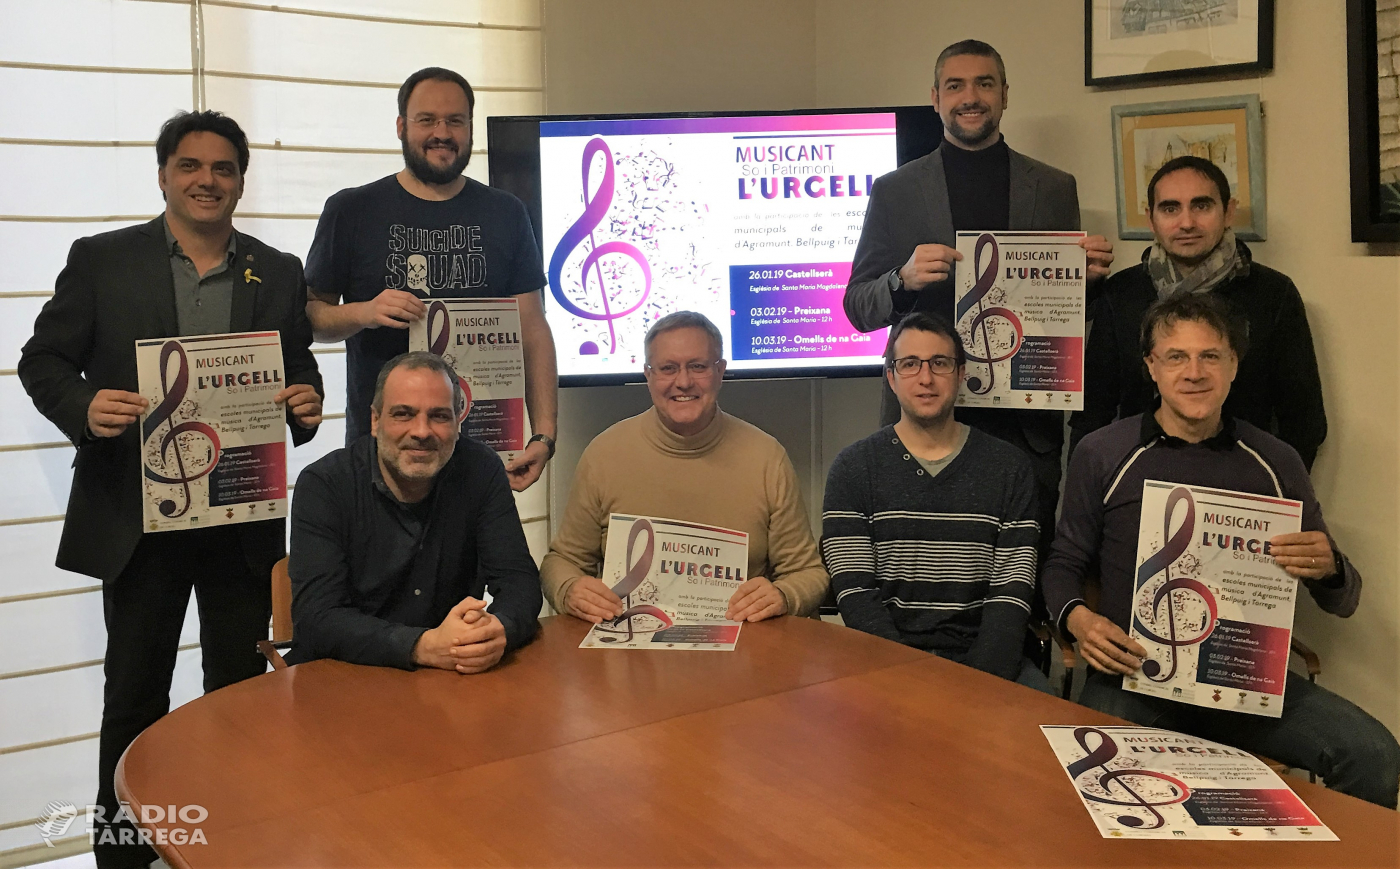 Torna el cicle "Musicant l'Urgell" amb la participació de 200 alumnes de les escoles de música de Tàrrega, Agramunt i Bellpuig